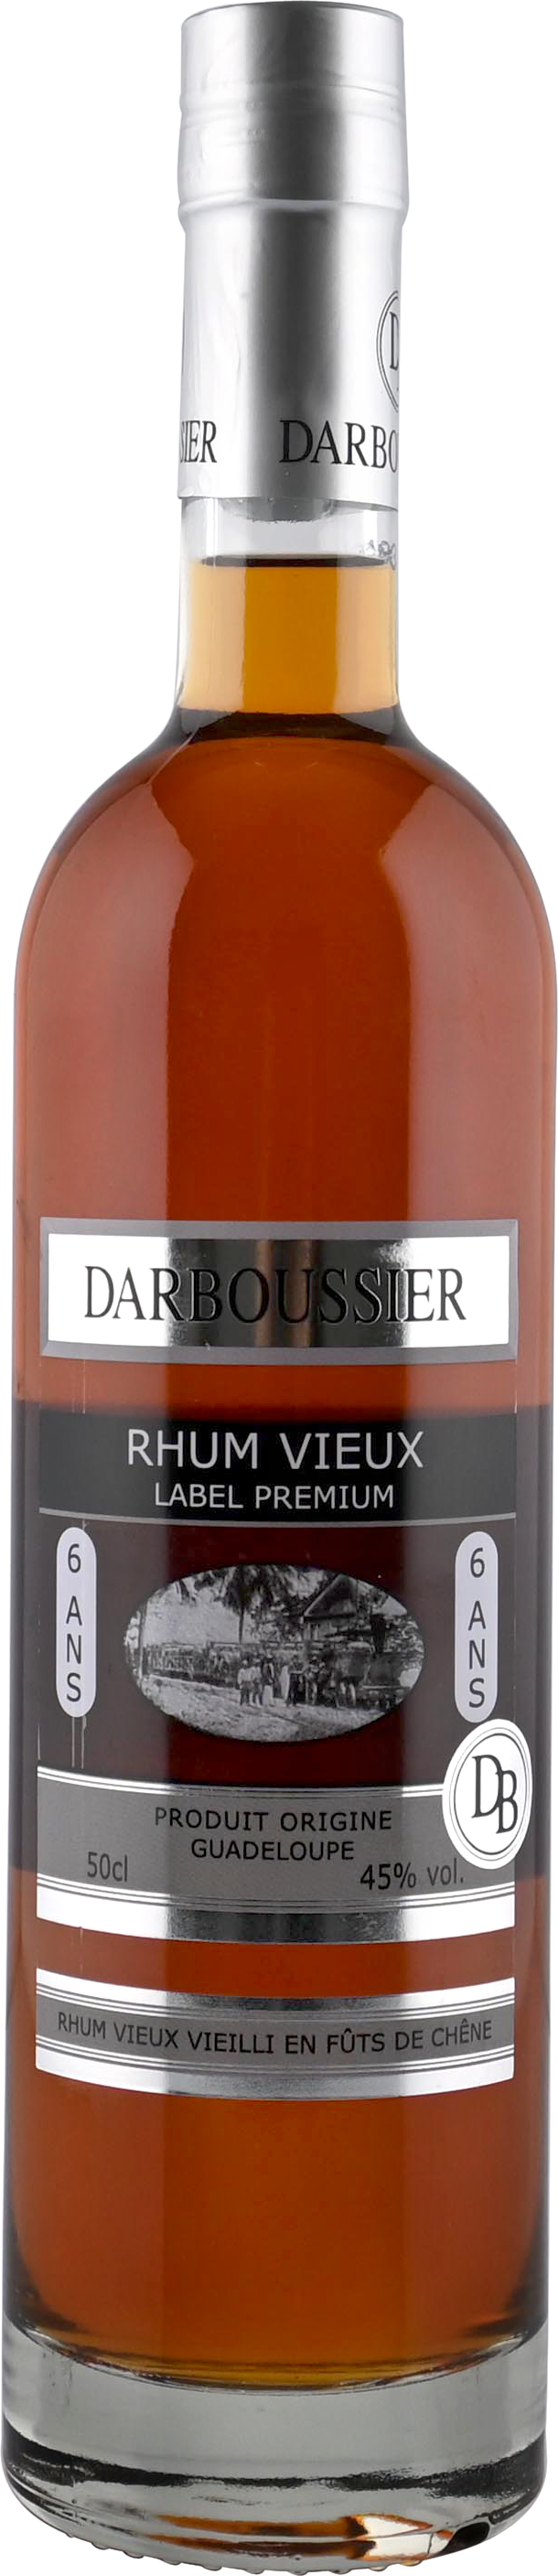 Darboussier Rhum Tres Vieux 6 Jahre 45% 0,5l